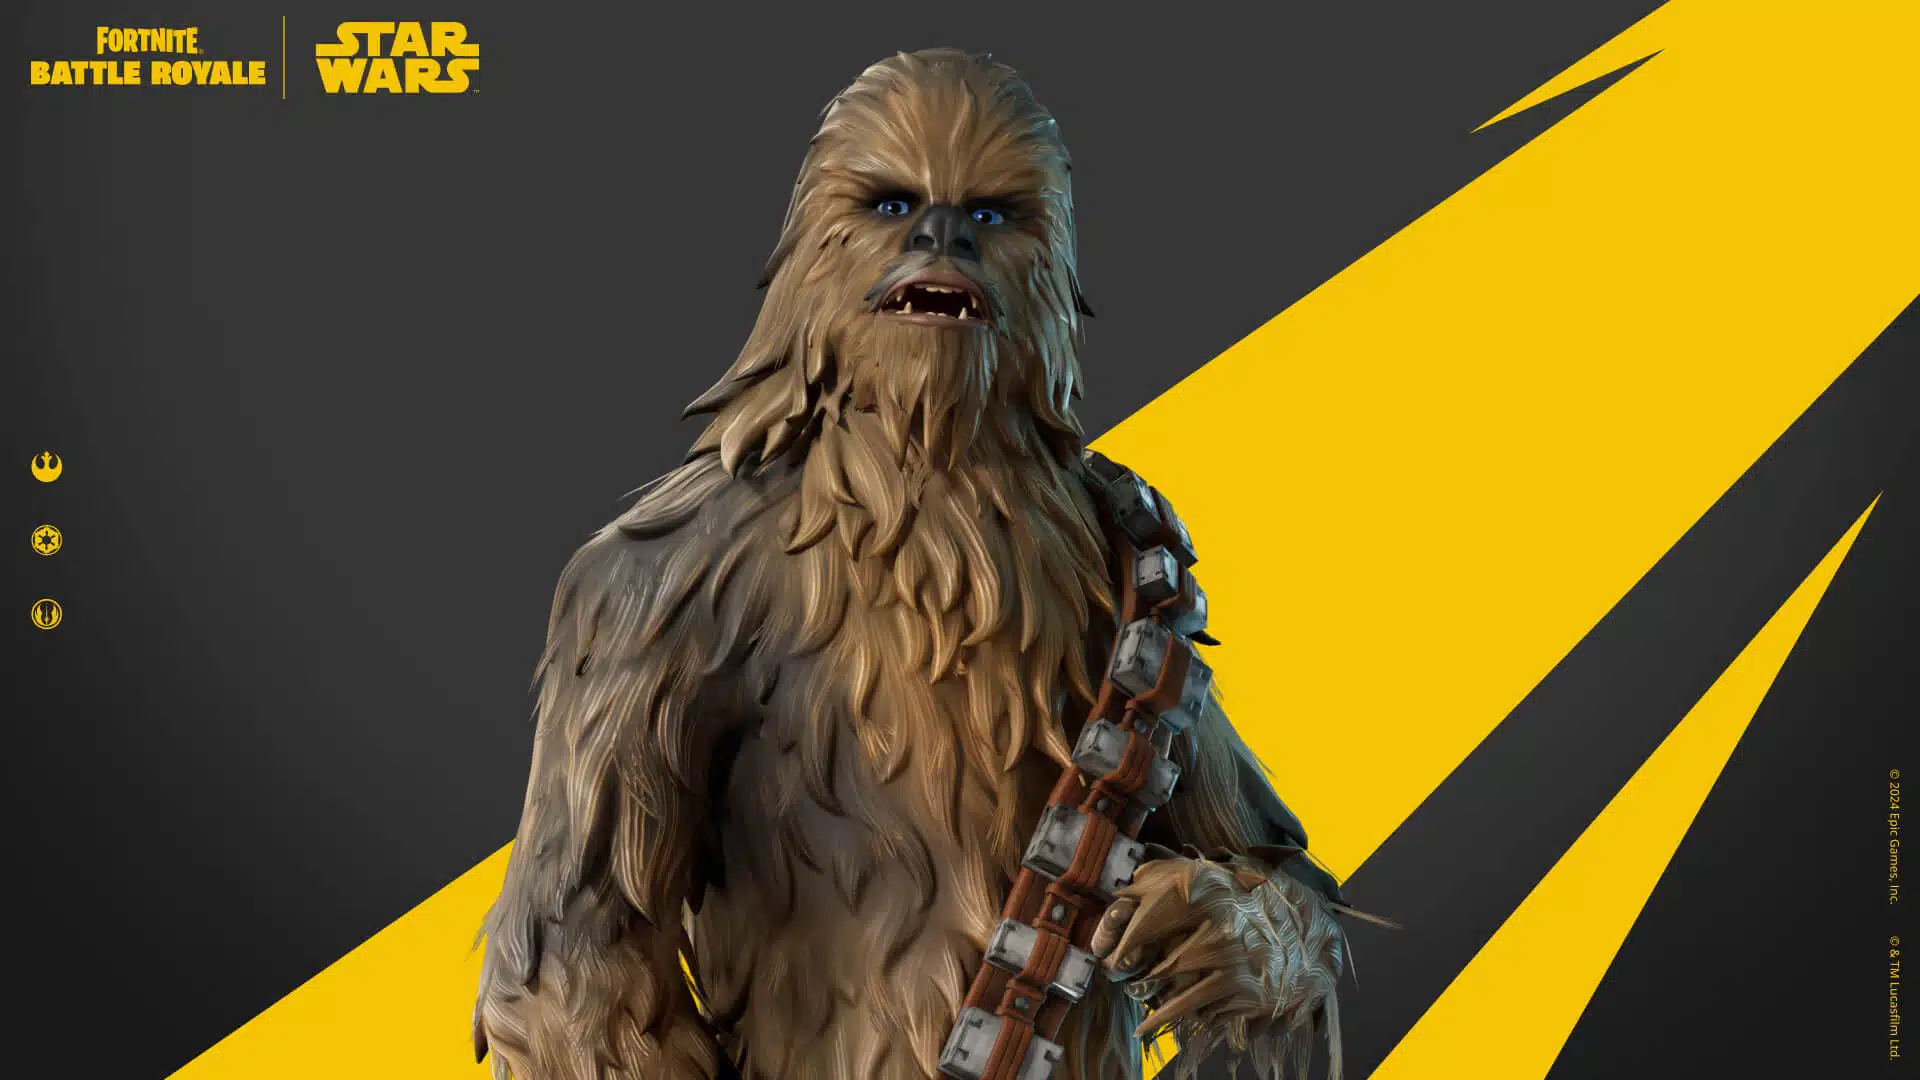 Fortnite Star Wars Skins - Chewbacca